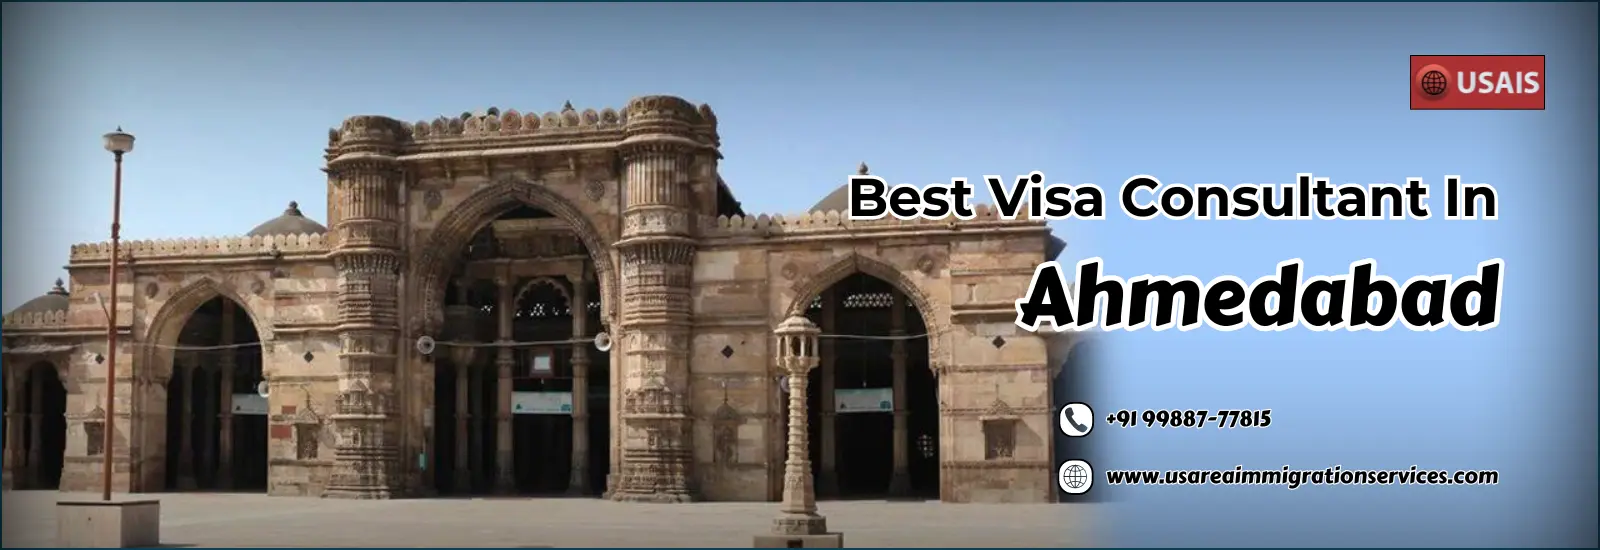 Best-Visa-Consultant-In-Ahmedabad